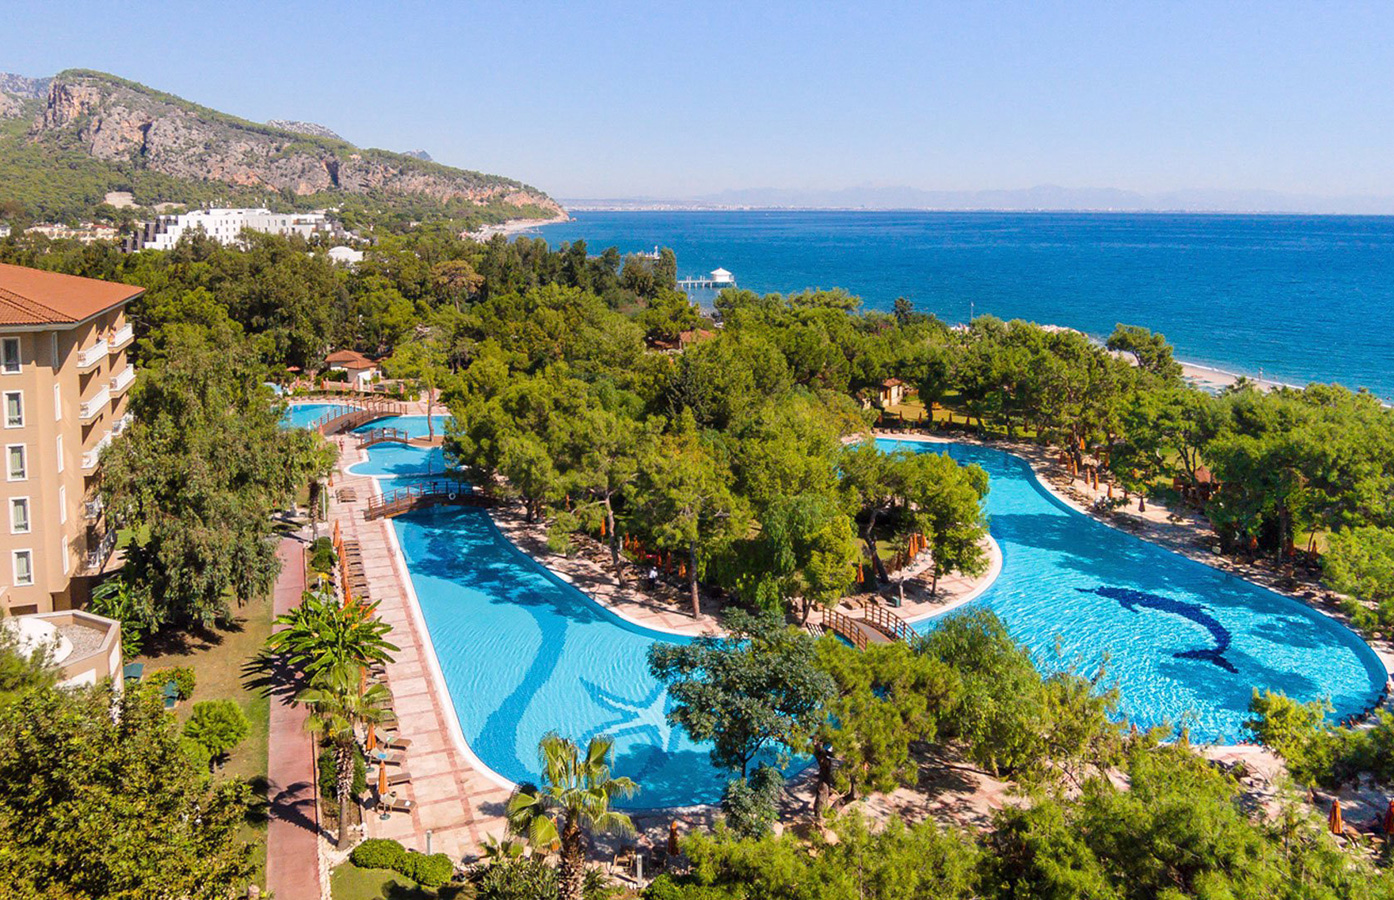 Akka Antedon Hotel in Turkey